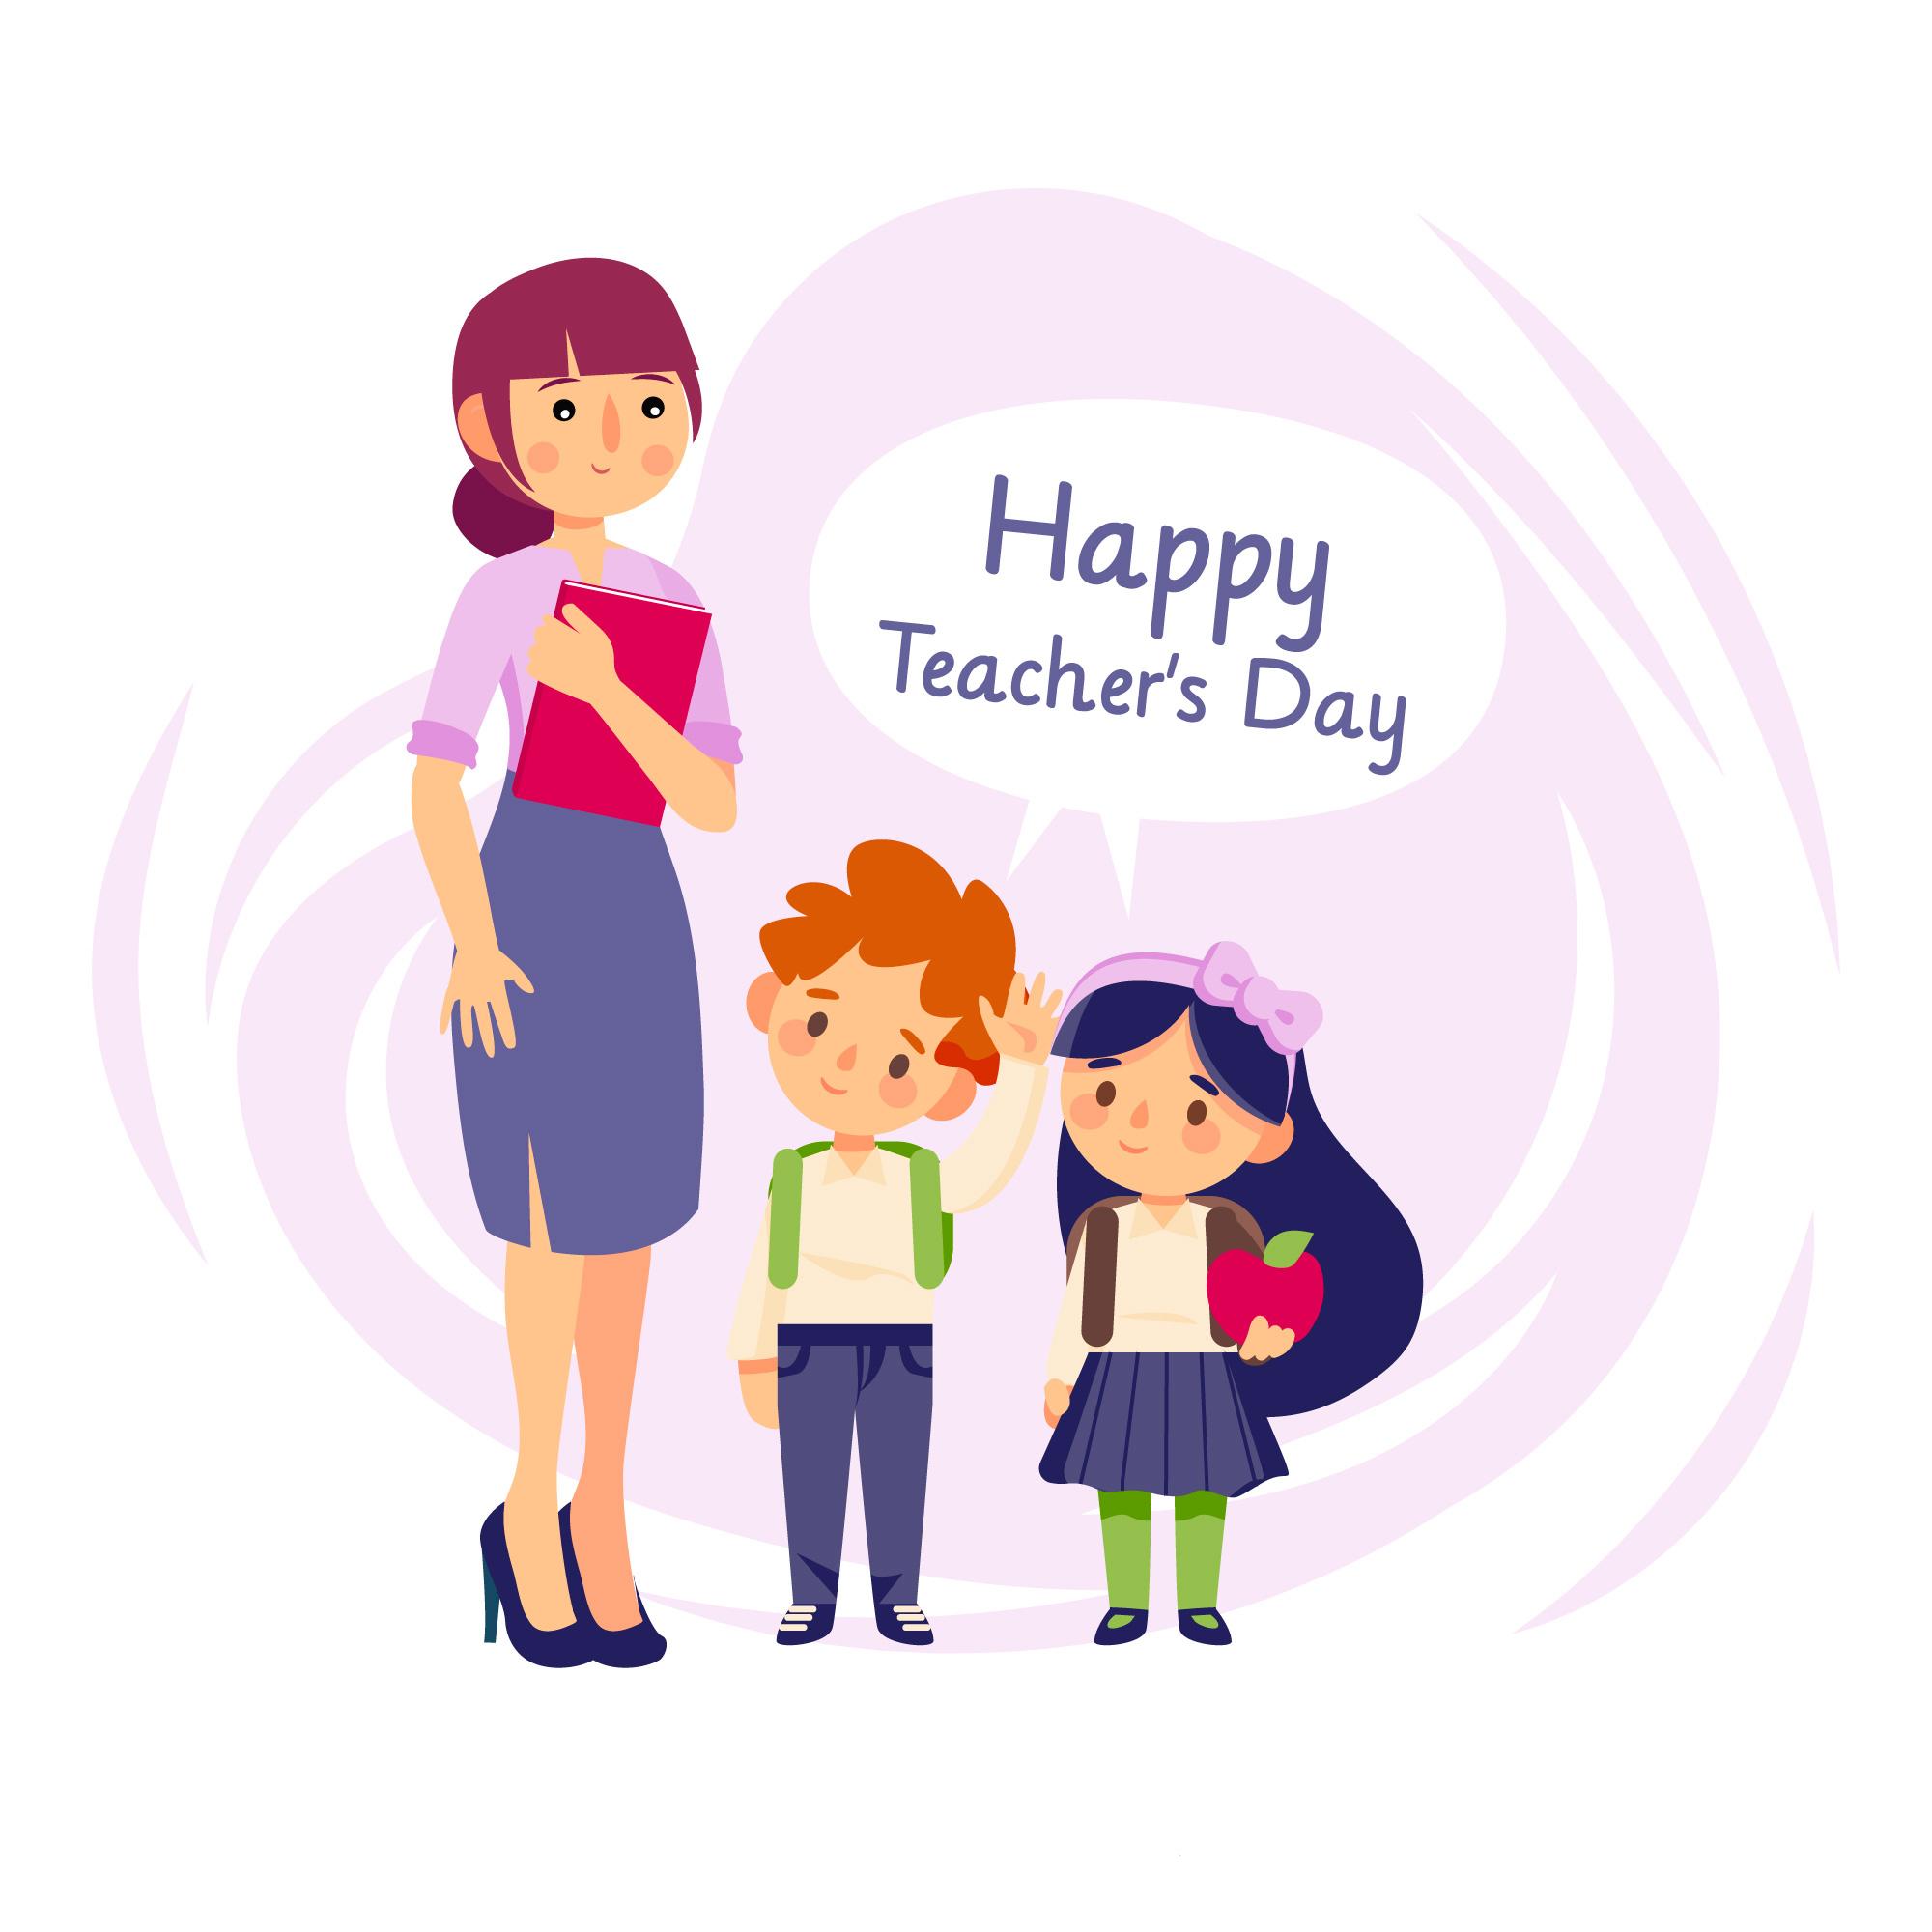 Happy Teachers Day - HD Wallpaper 